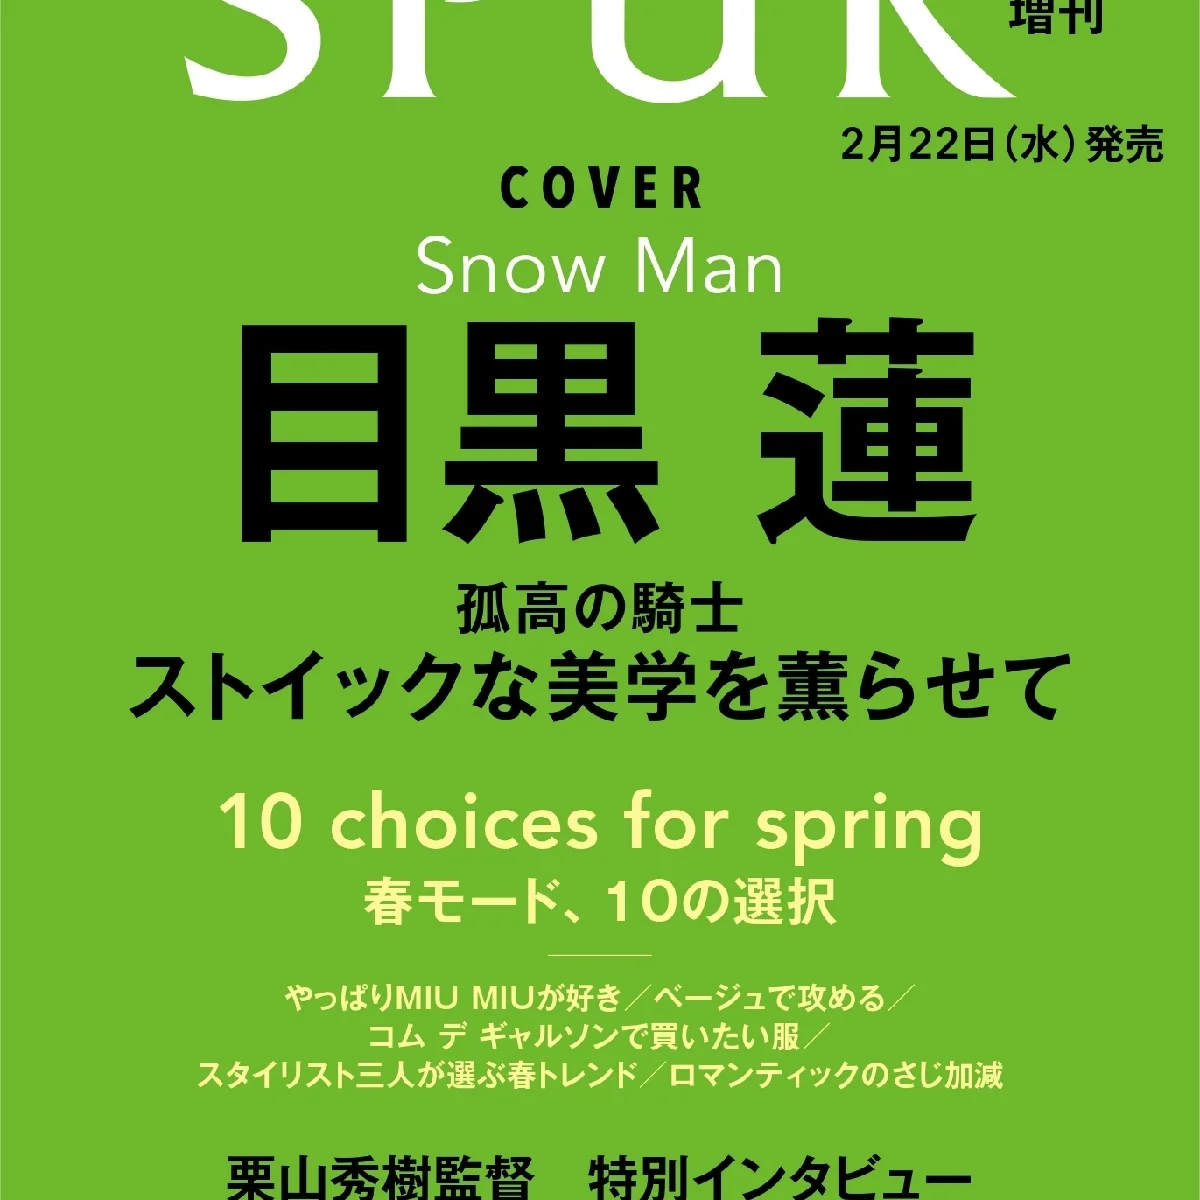 SPUR４月号の増刊版カバーにSnow Man目黒蓮さんが降臨！